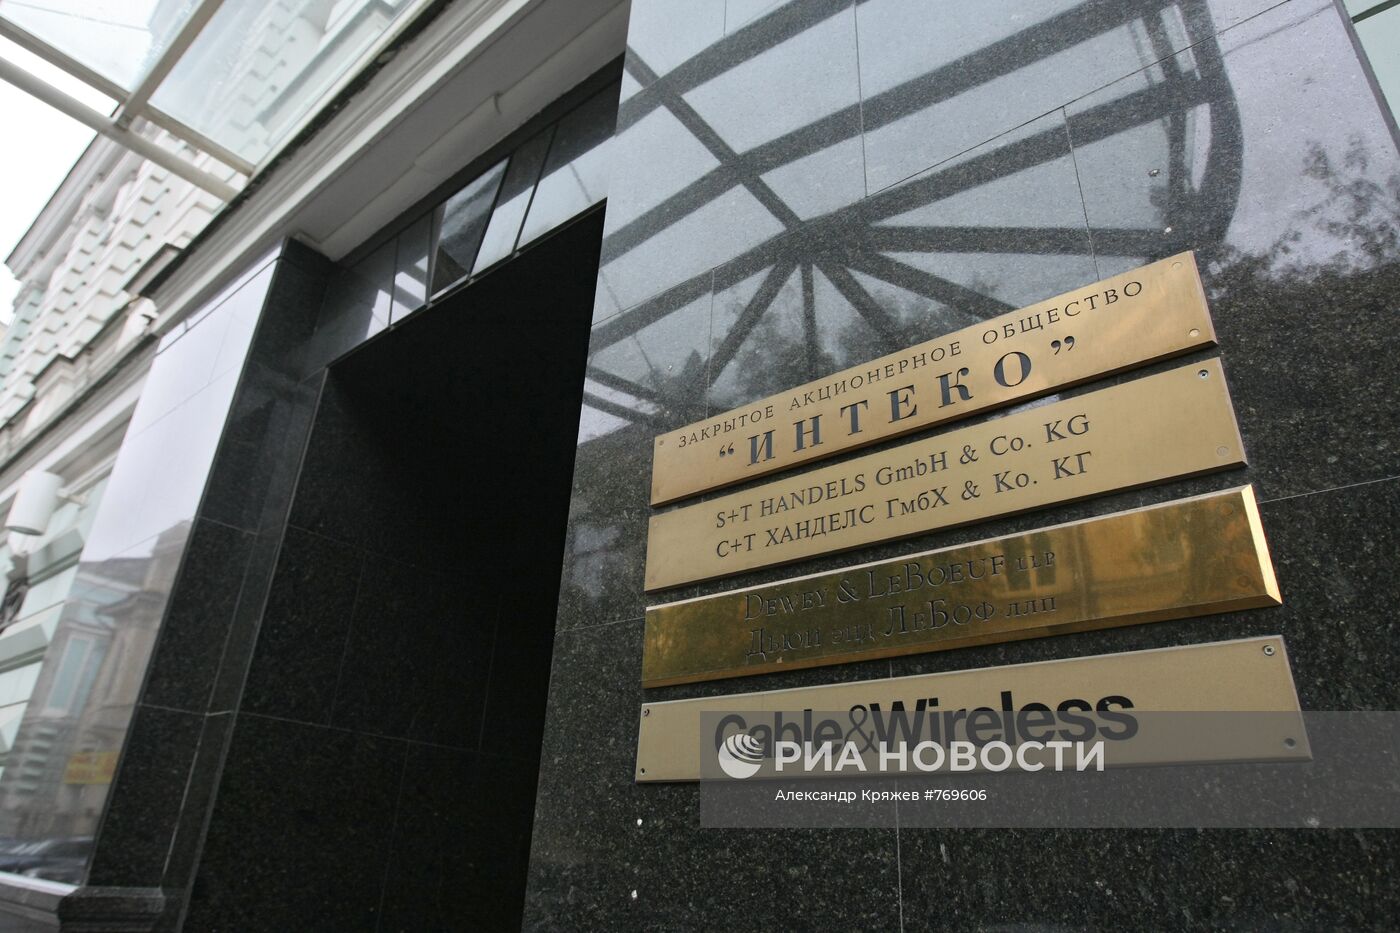 Офис ЗАО "Интеко" в Москве